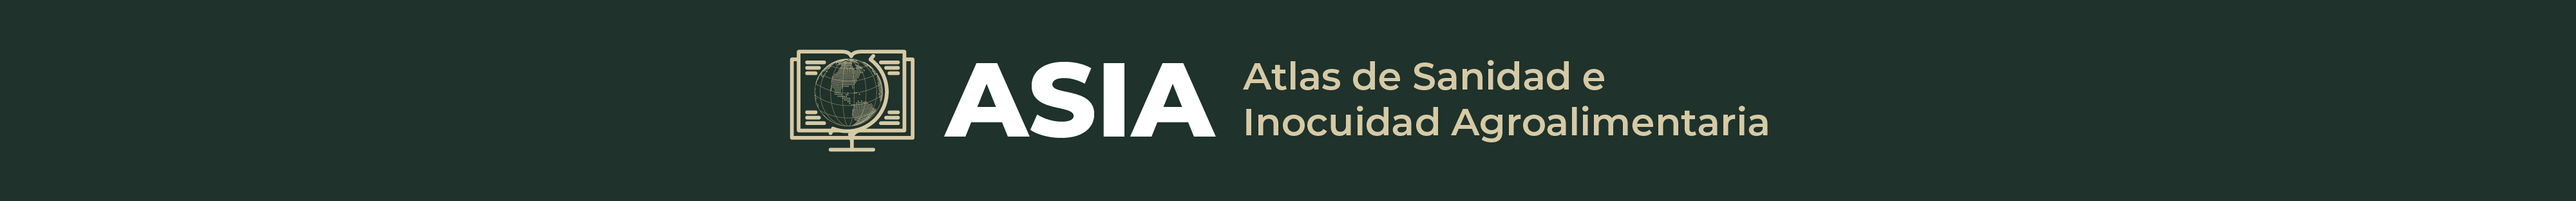 Atlas de Sanidad e Inocuidad Agroalimentaria